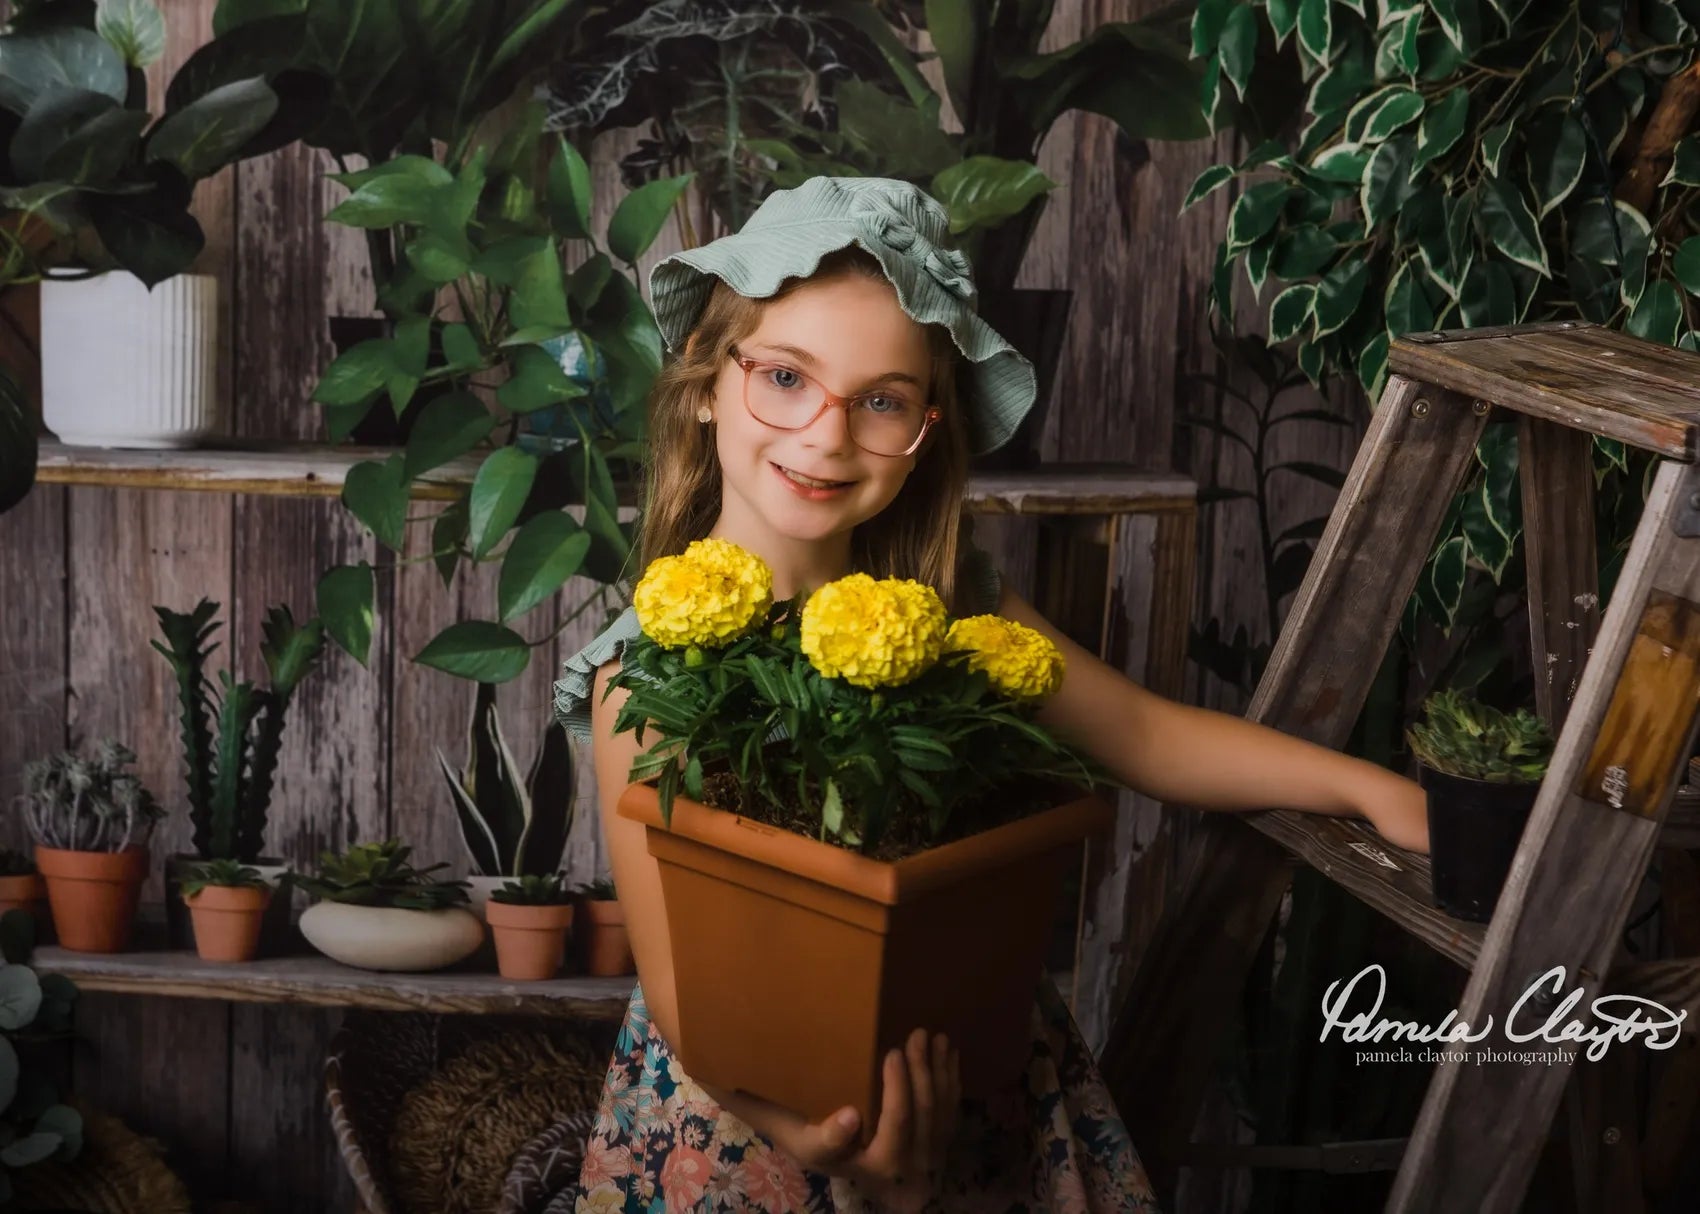 Kate Été Rustique Boutique de plantes Toile de fond conçue par Mandy Ringe